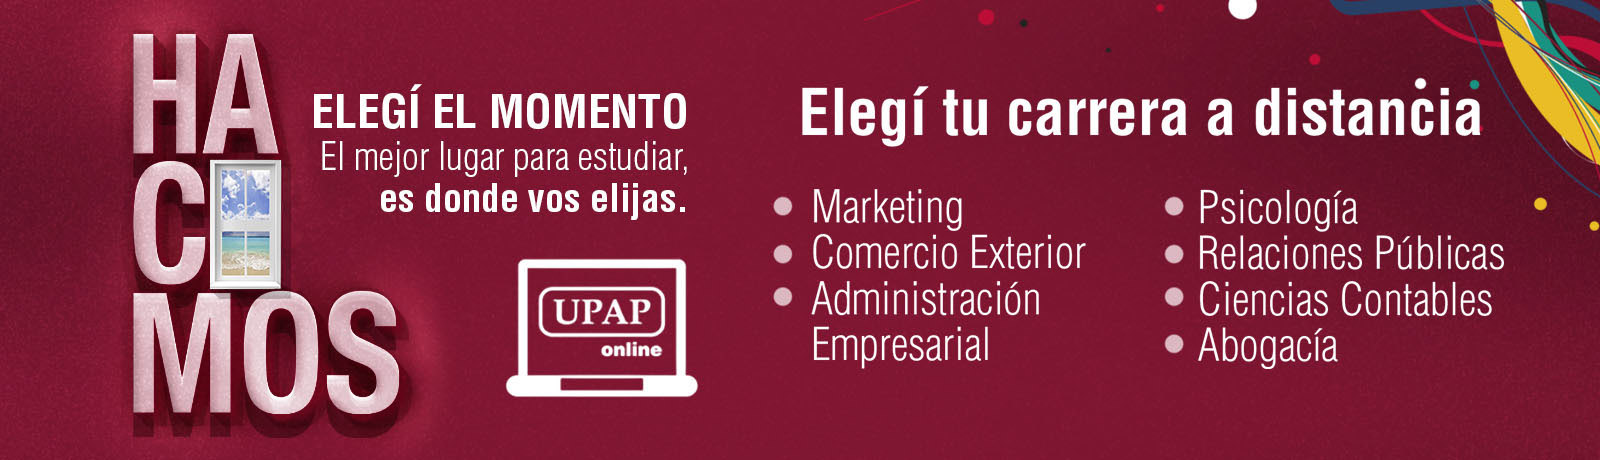 UPAP online, el sistema de Educación a Distancia de la Universidad - UPAP